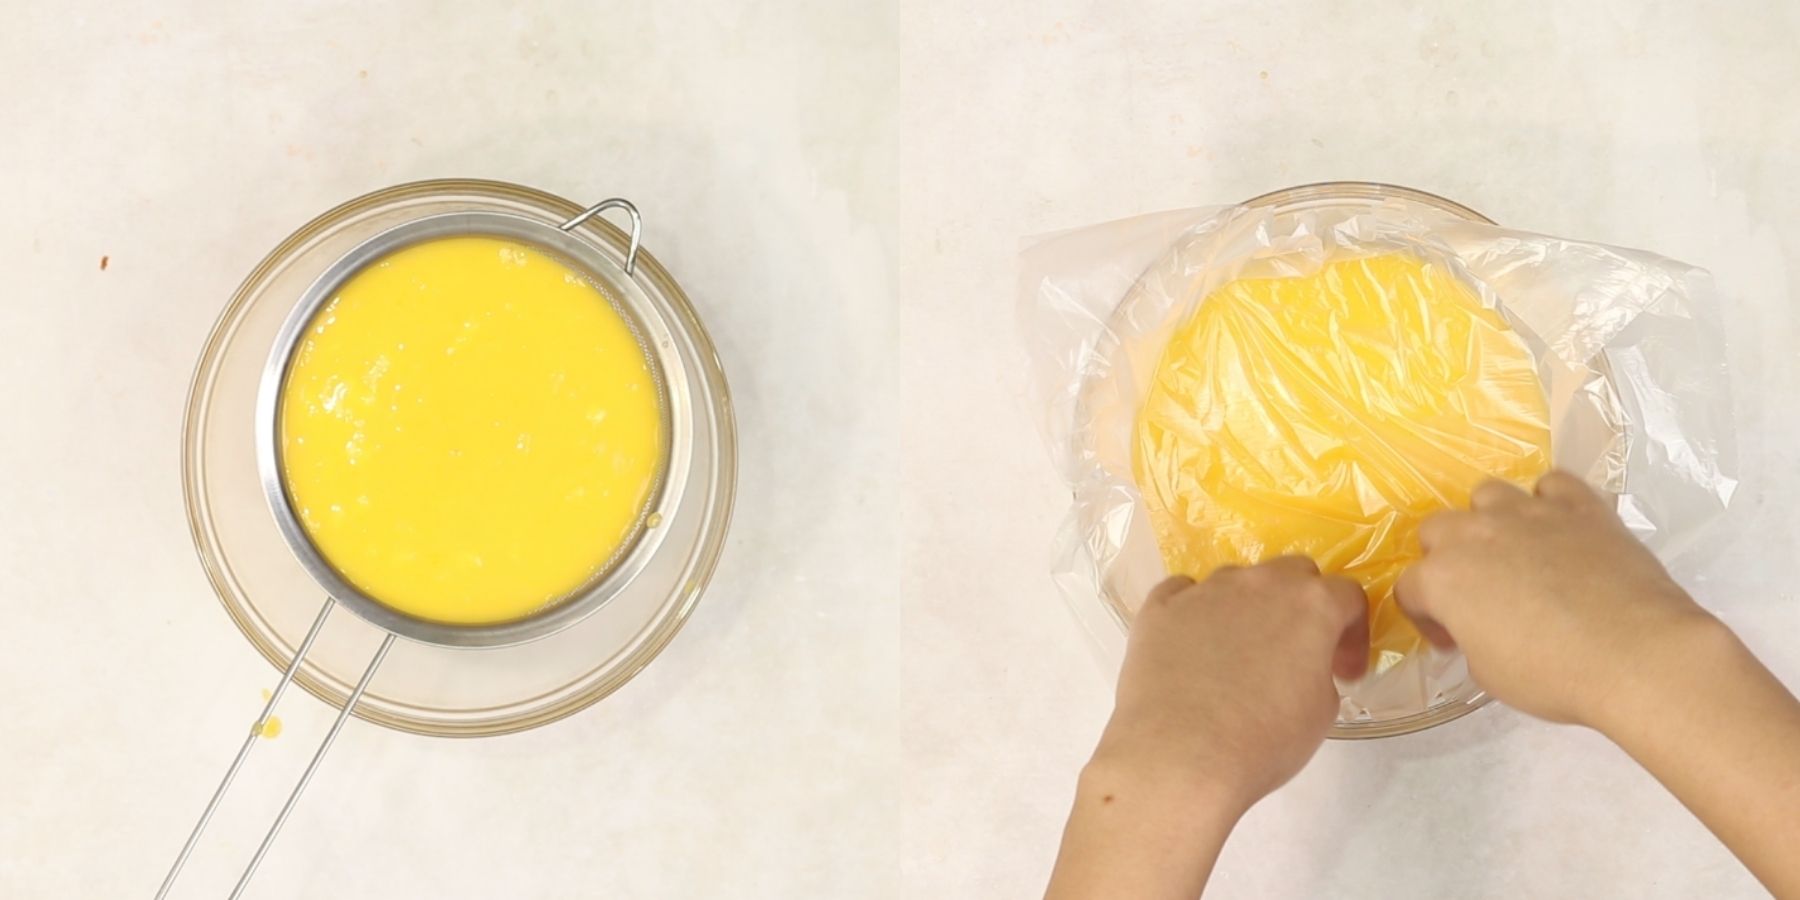 Lemon curd process shots.